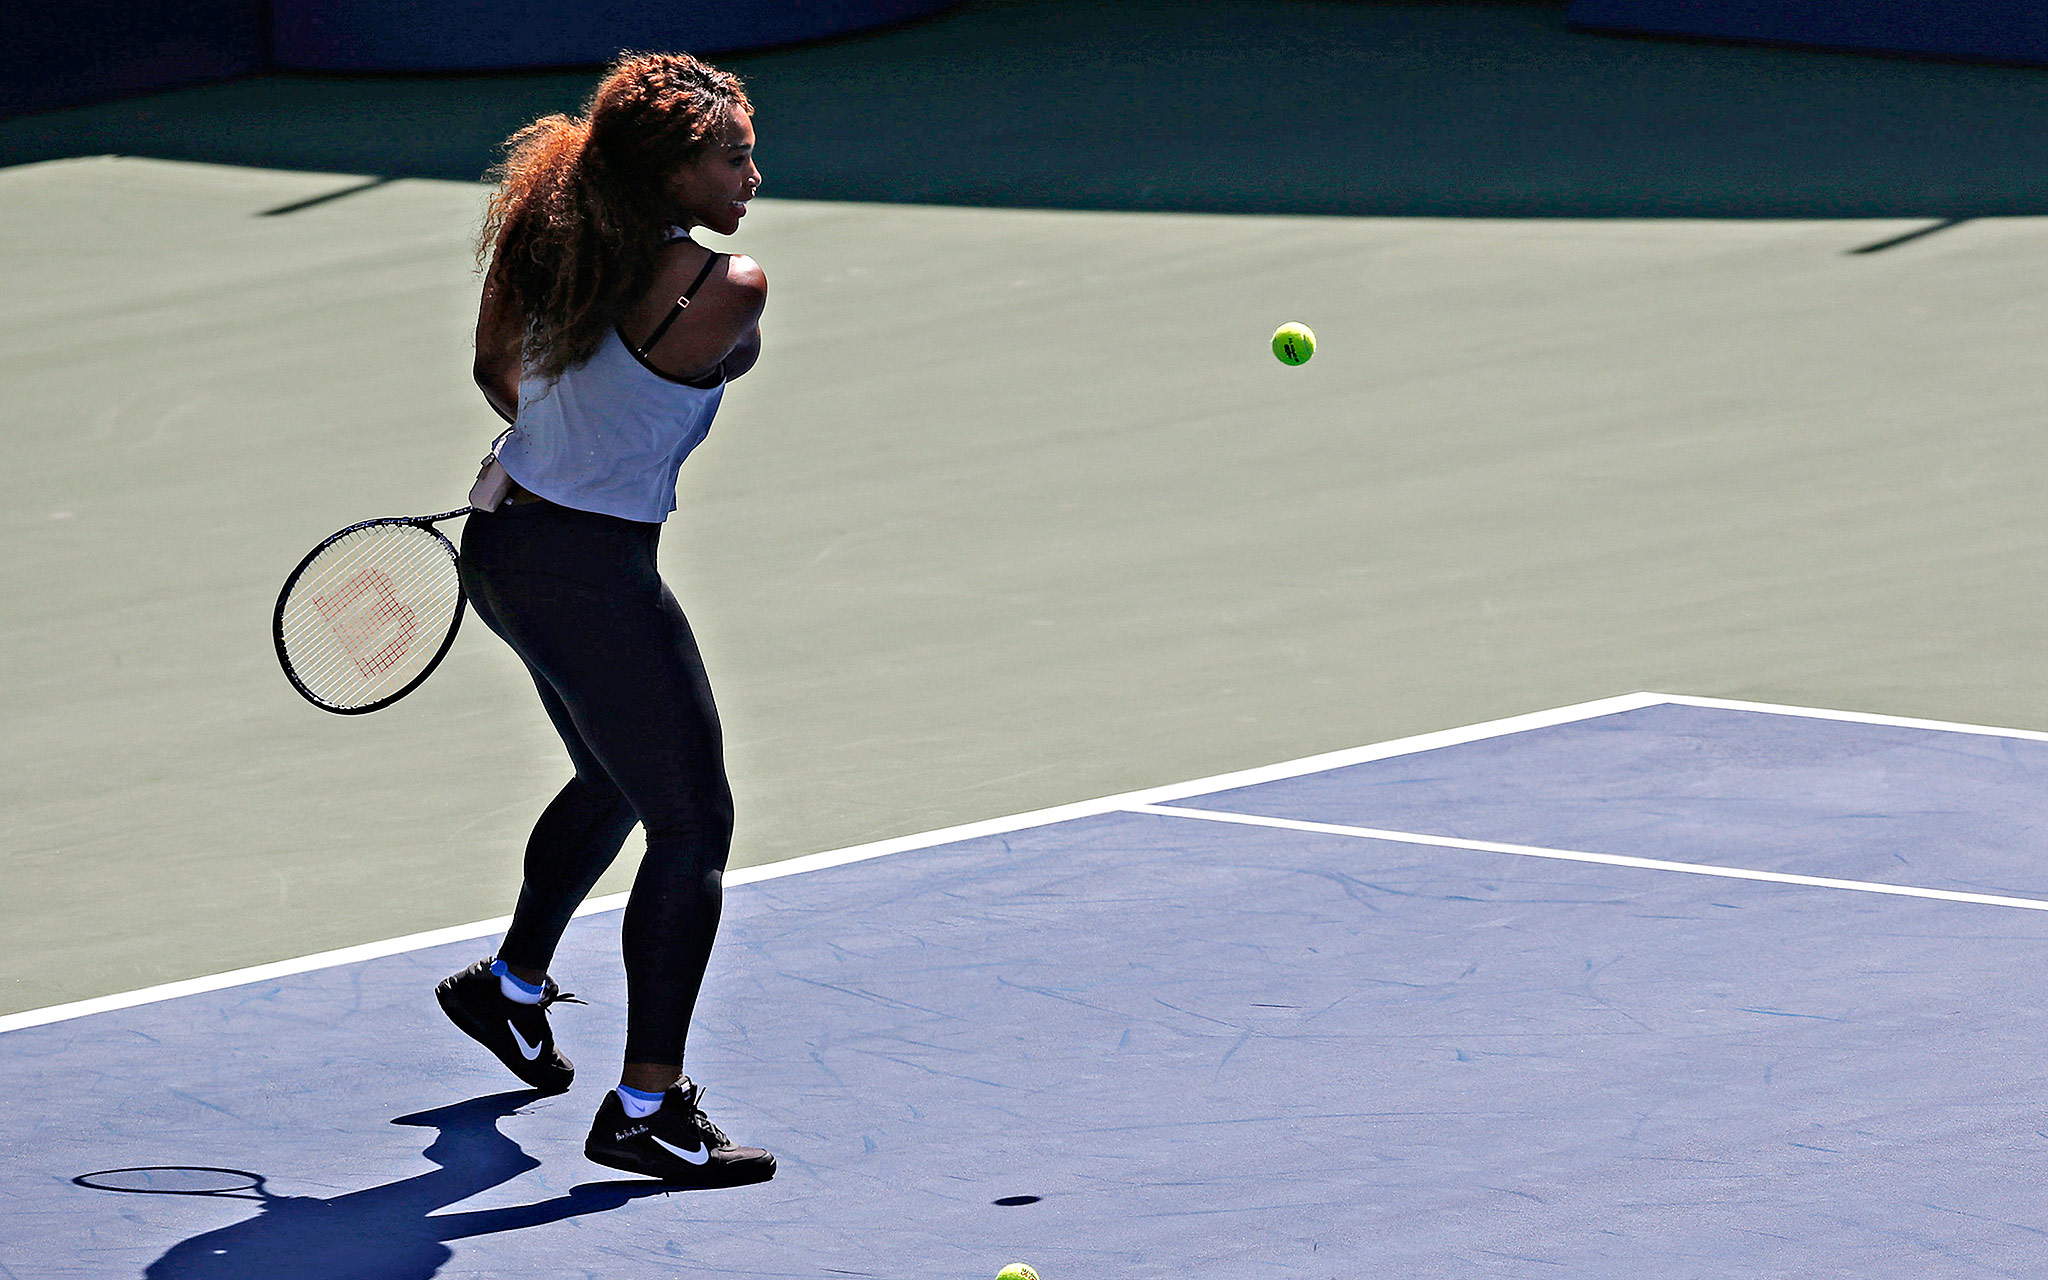 Serena Williams - espnW Photos of the Week Aug. 19 to 25, 2013 - espnW2048 x 1280